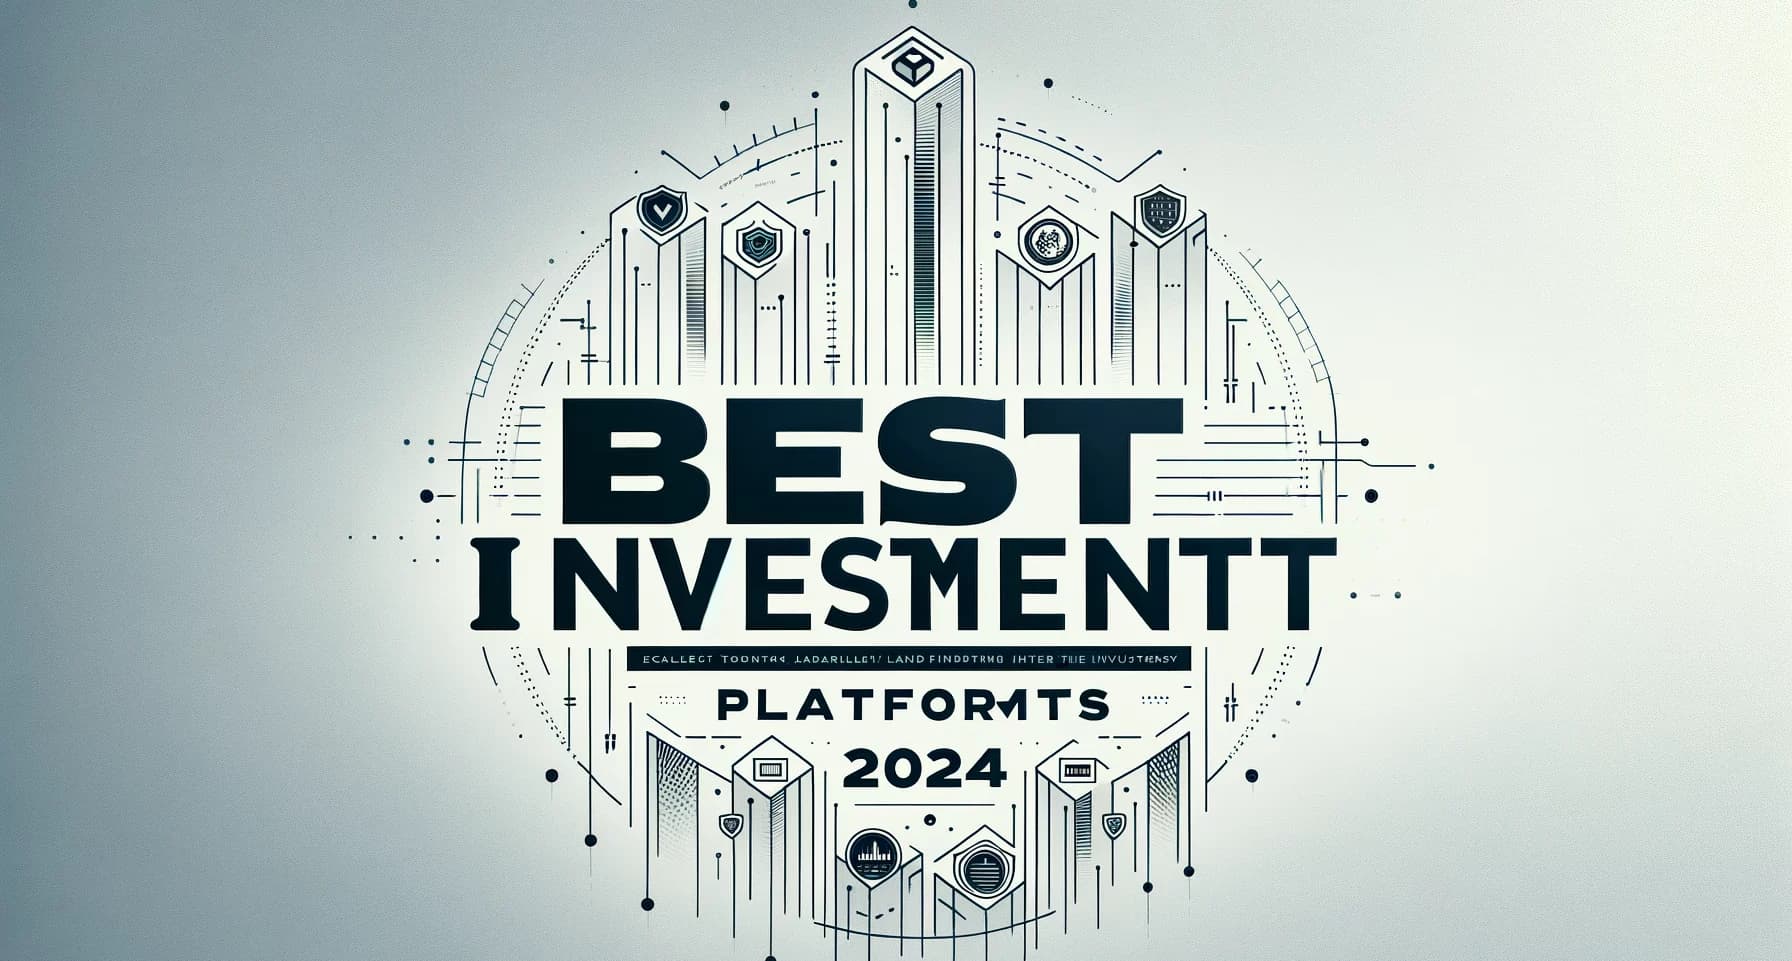 Best Investment Platforms in 2024